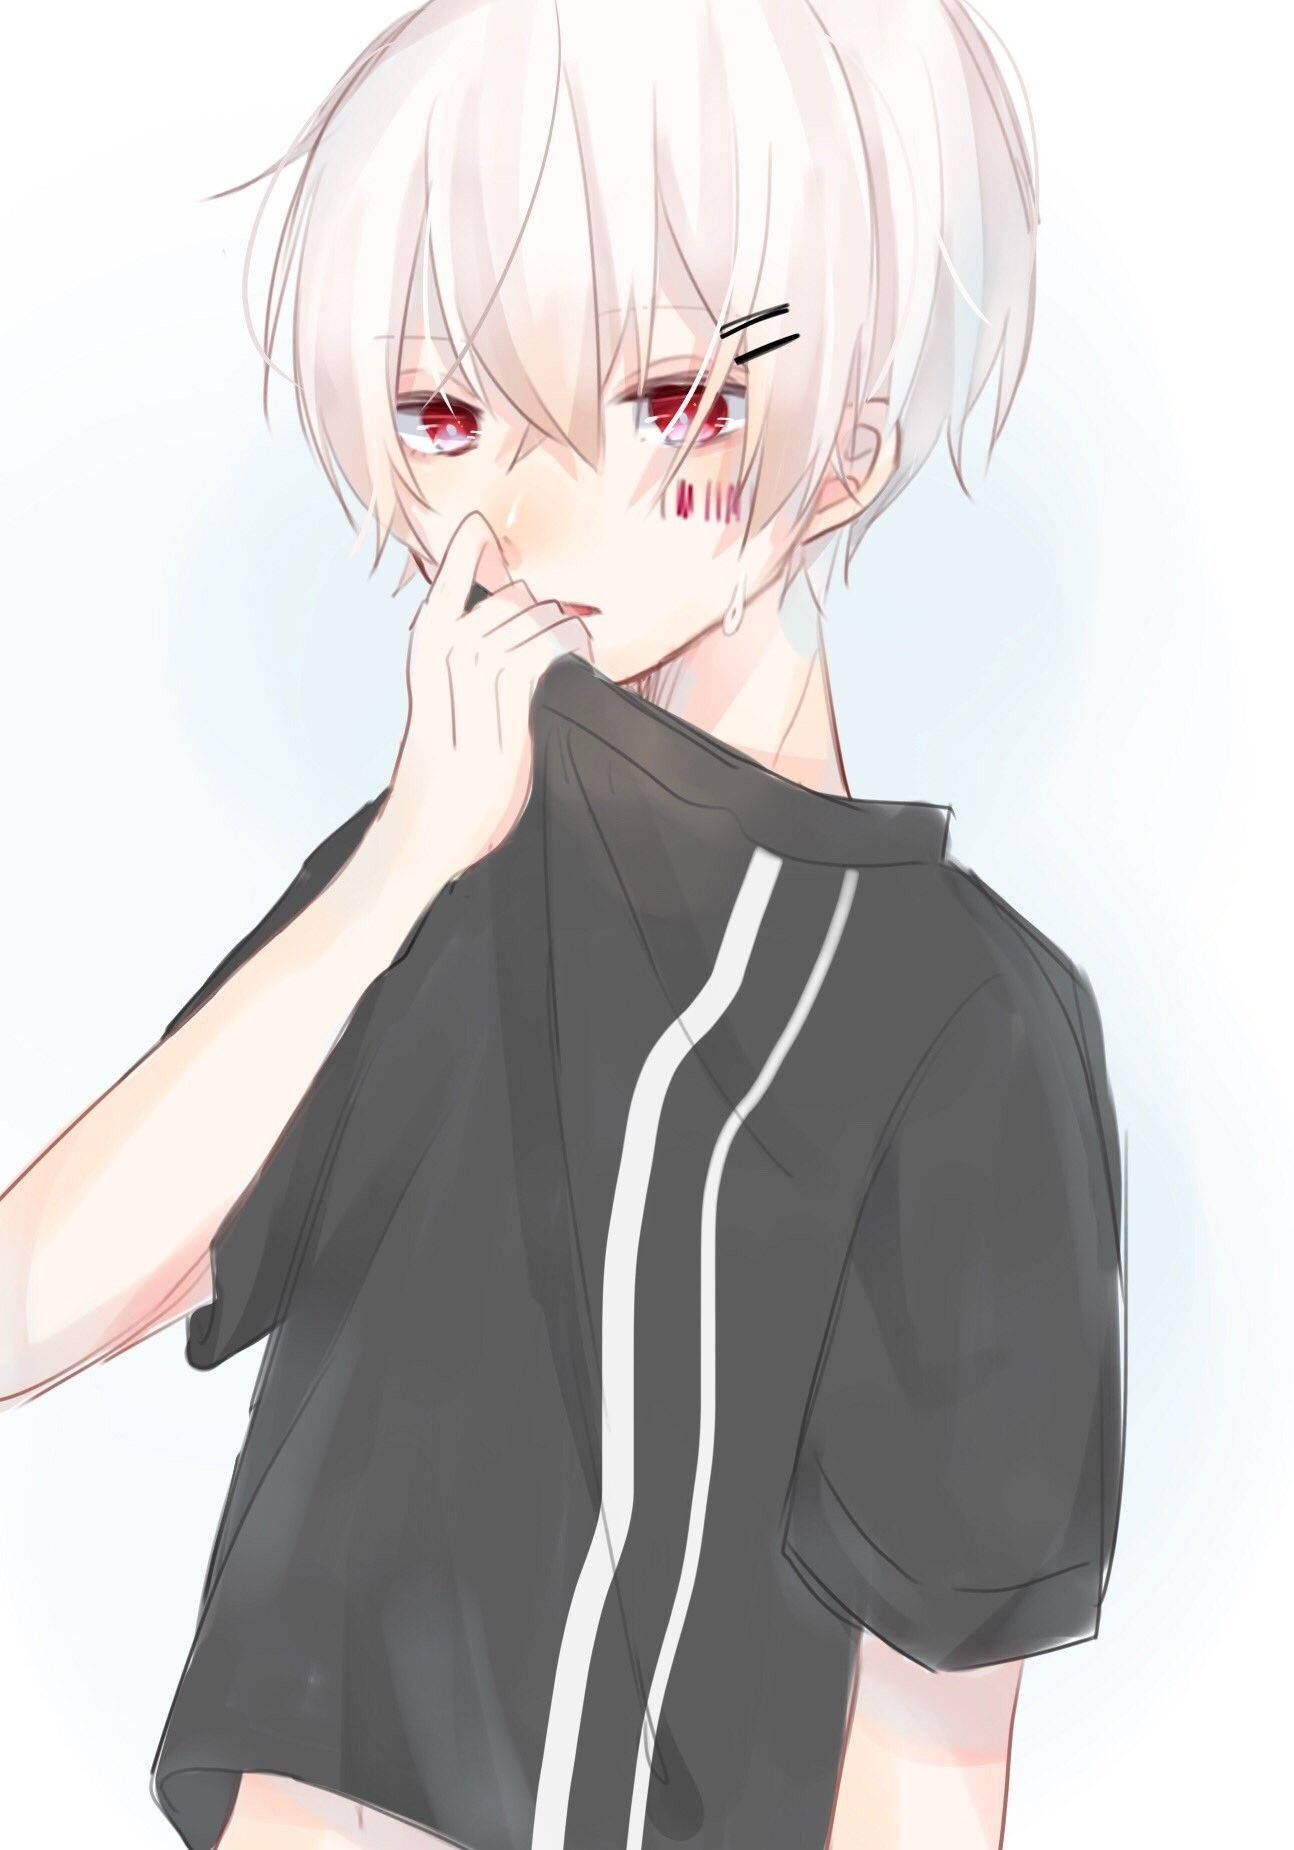 Cute Boy Cartoon With White Hair Wallpaper